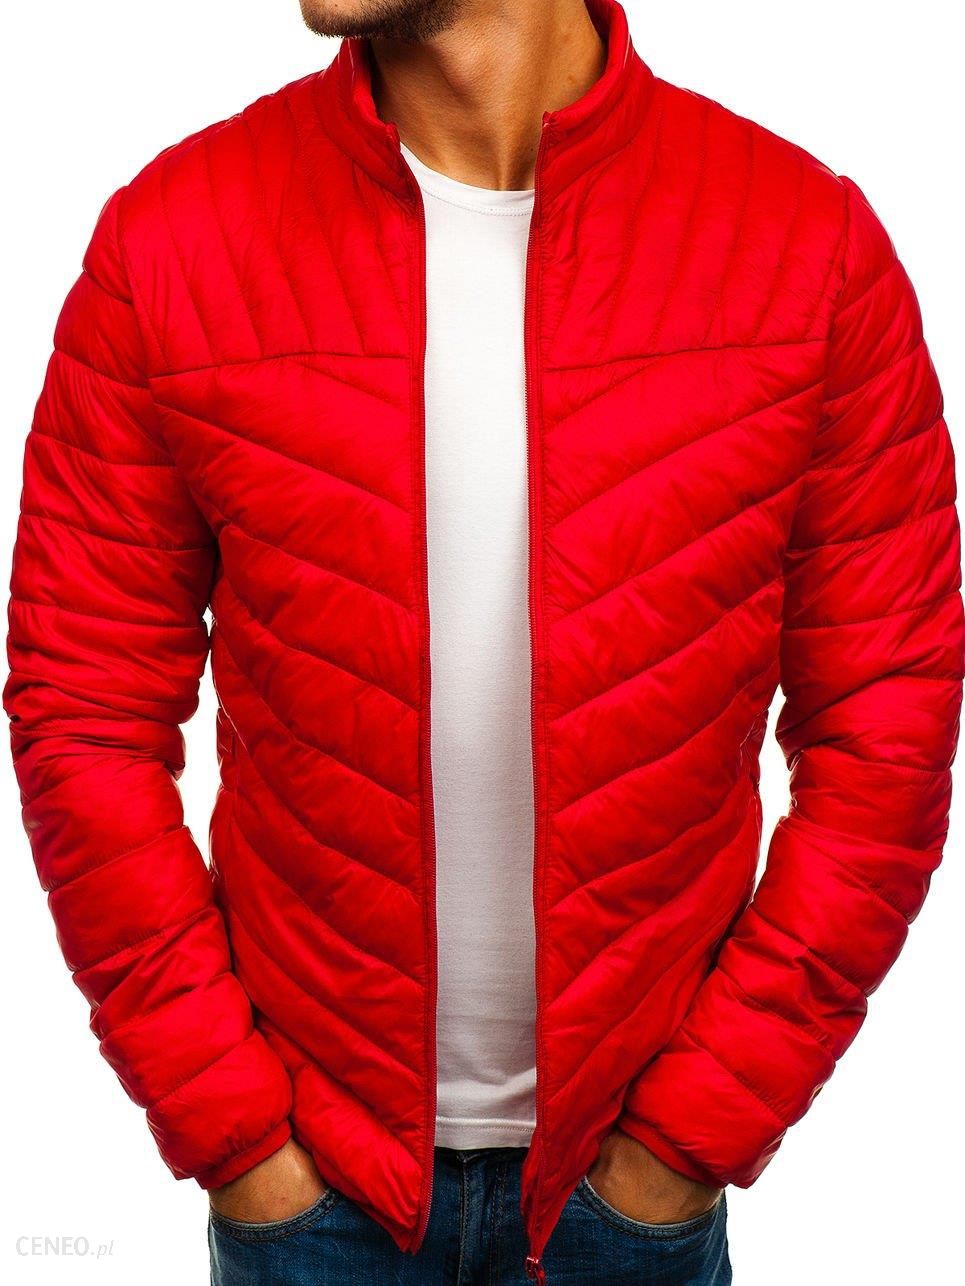 Красная куртка мужчины. Красные куртки стеганные мужские. Куртка мужская демисезонная красная. Красный пуховик мужской. Красная куртка мужская осенняя.